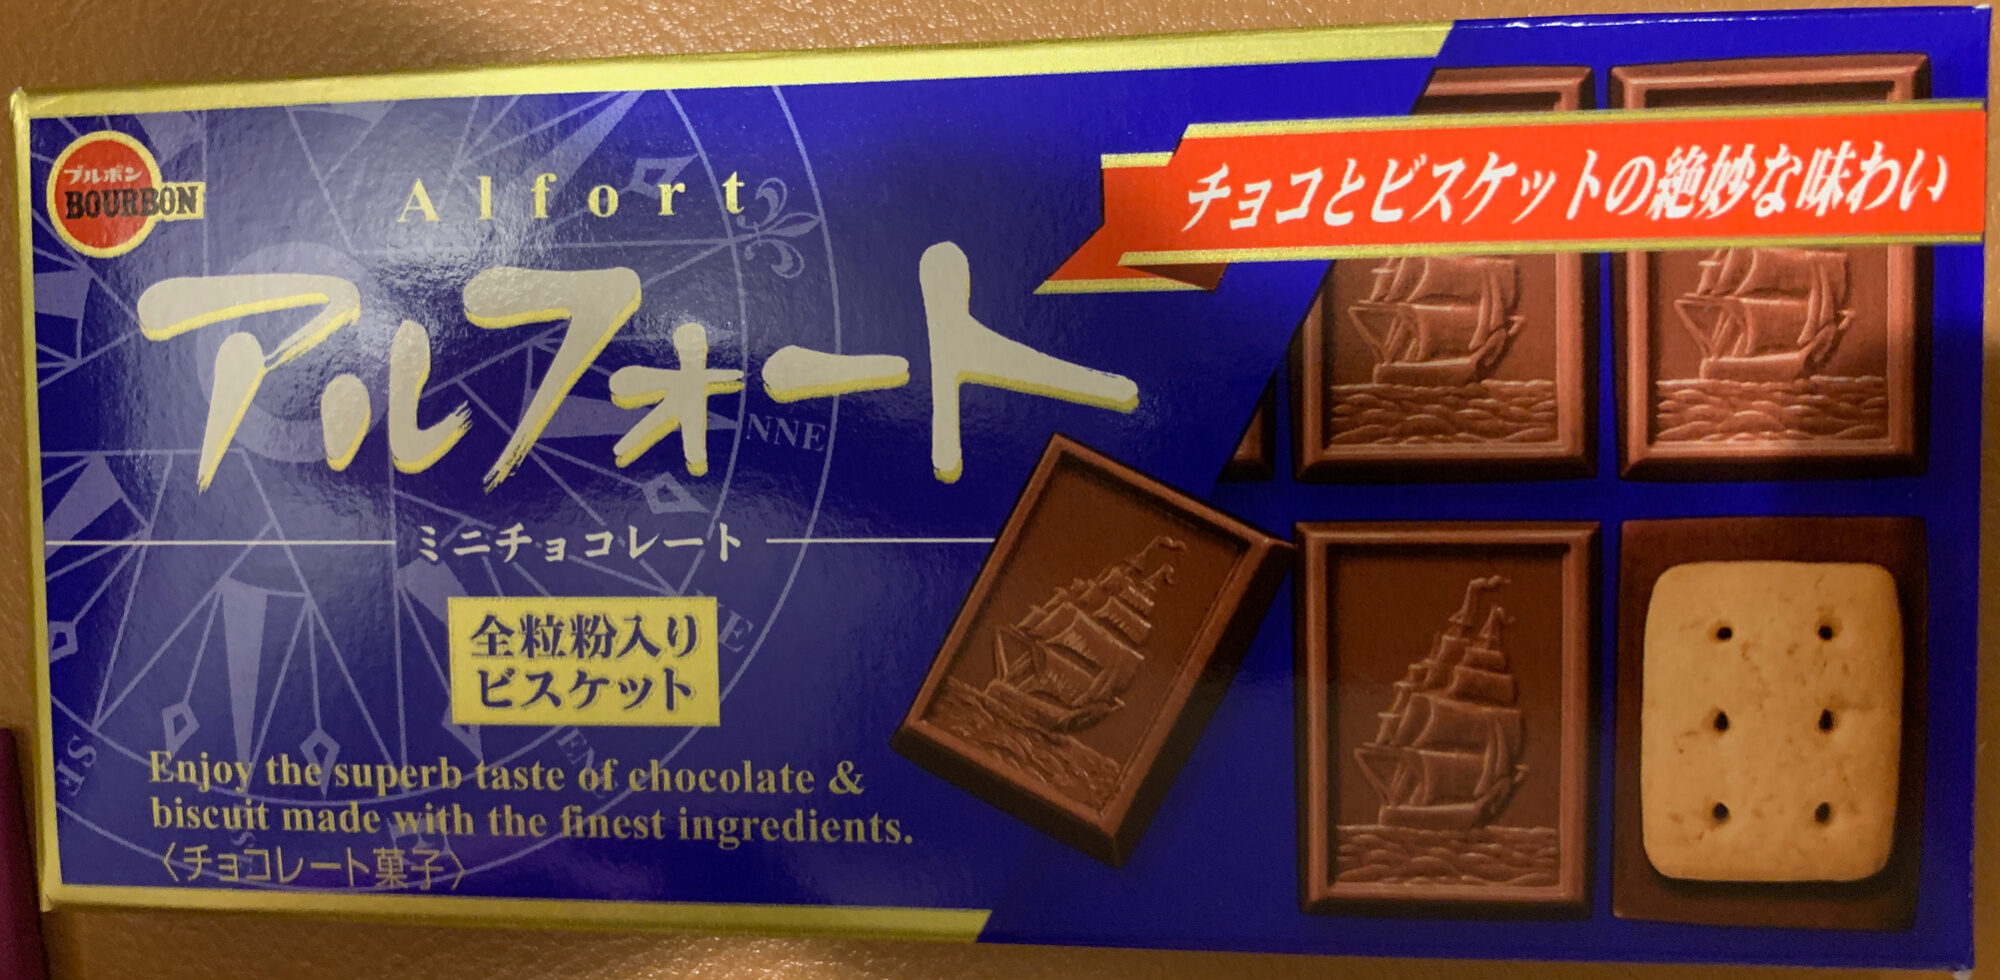 アルフォートミニチョコレート - Product - ja